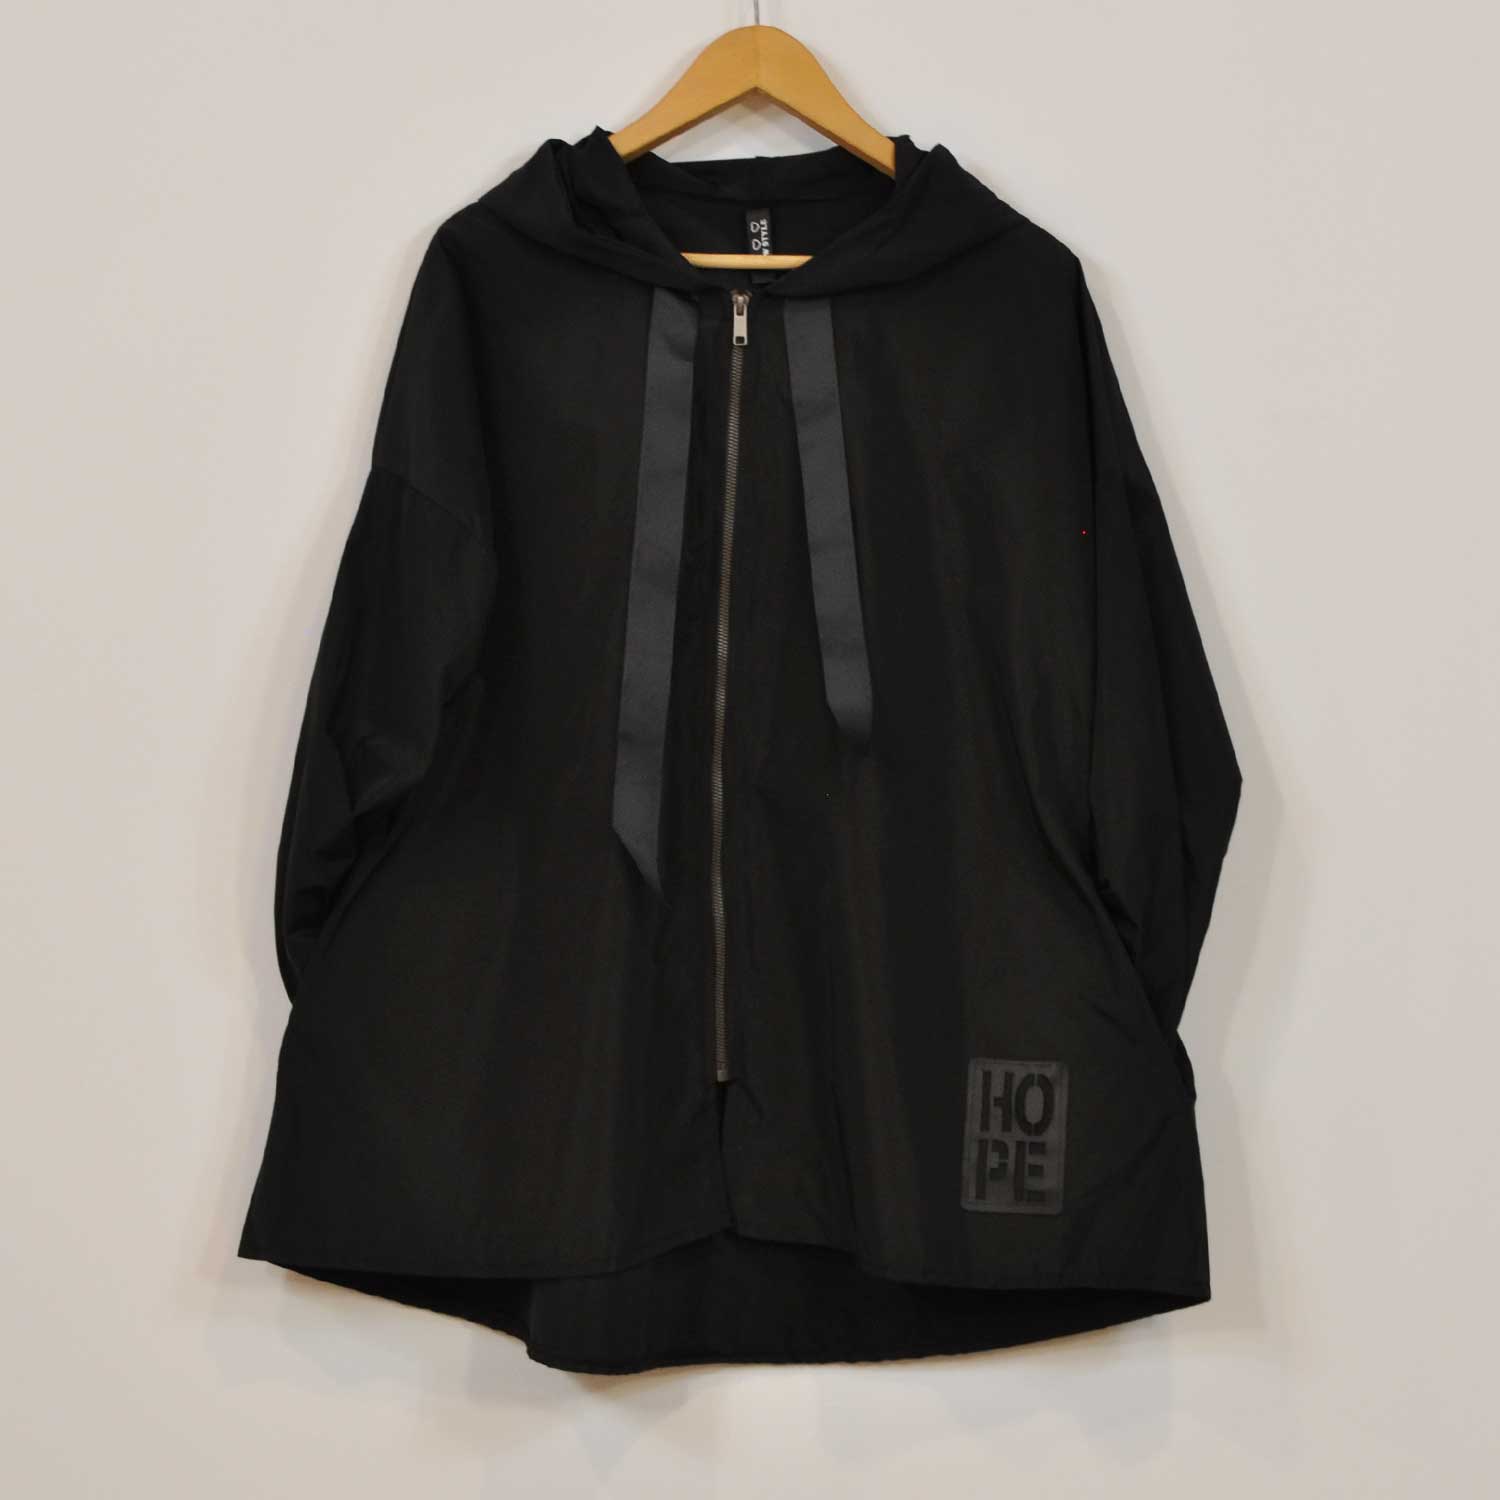 Black windbreaker jacket